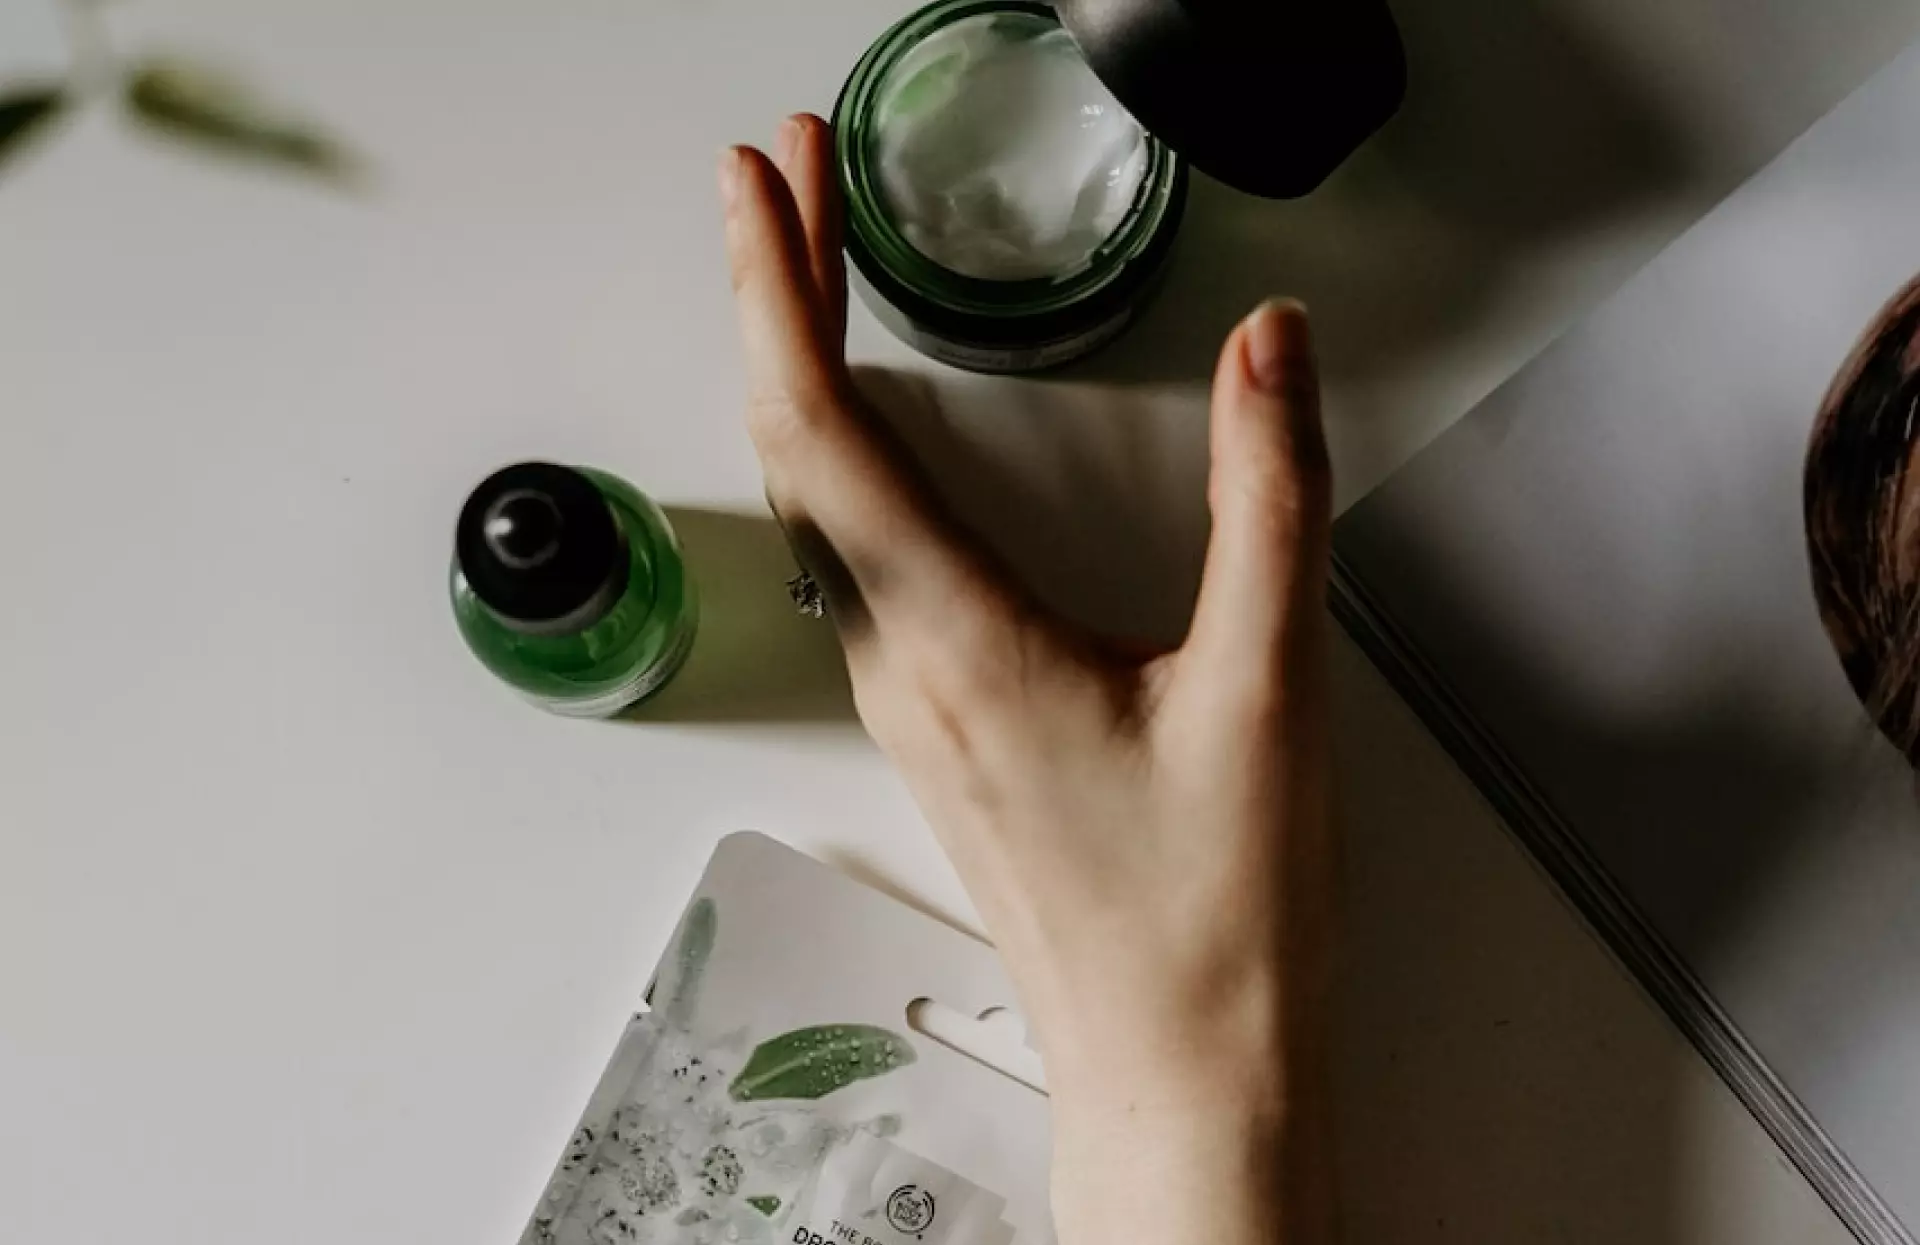 Grüne Flaschen